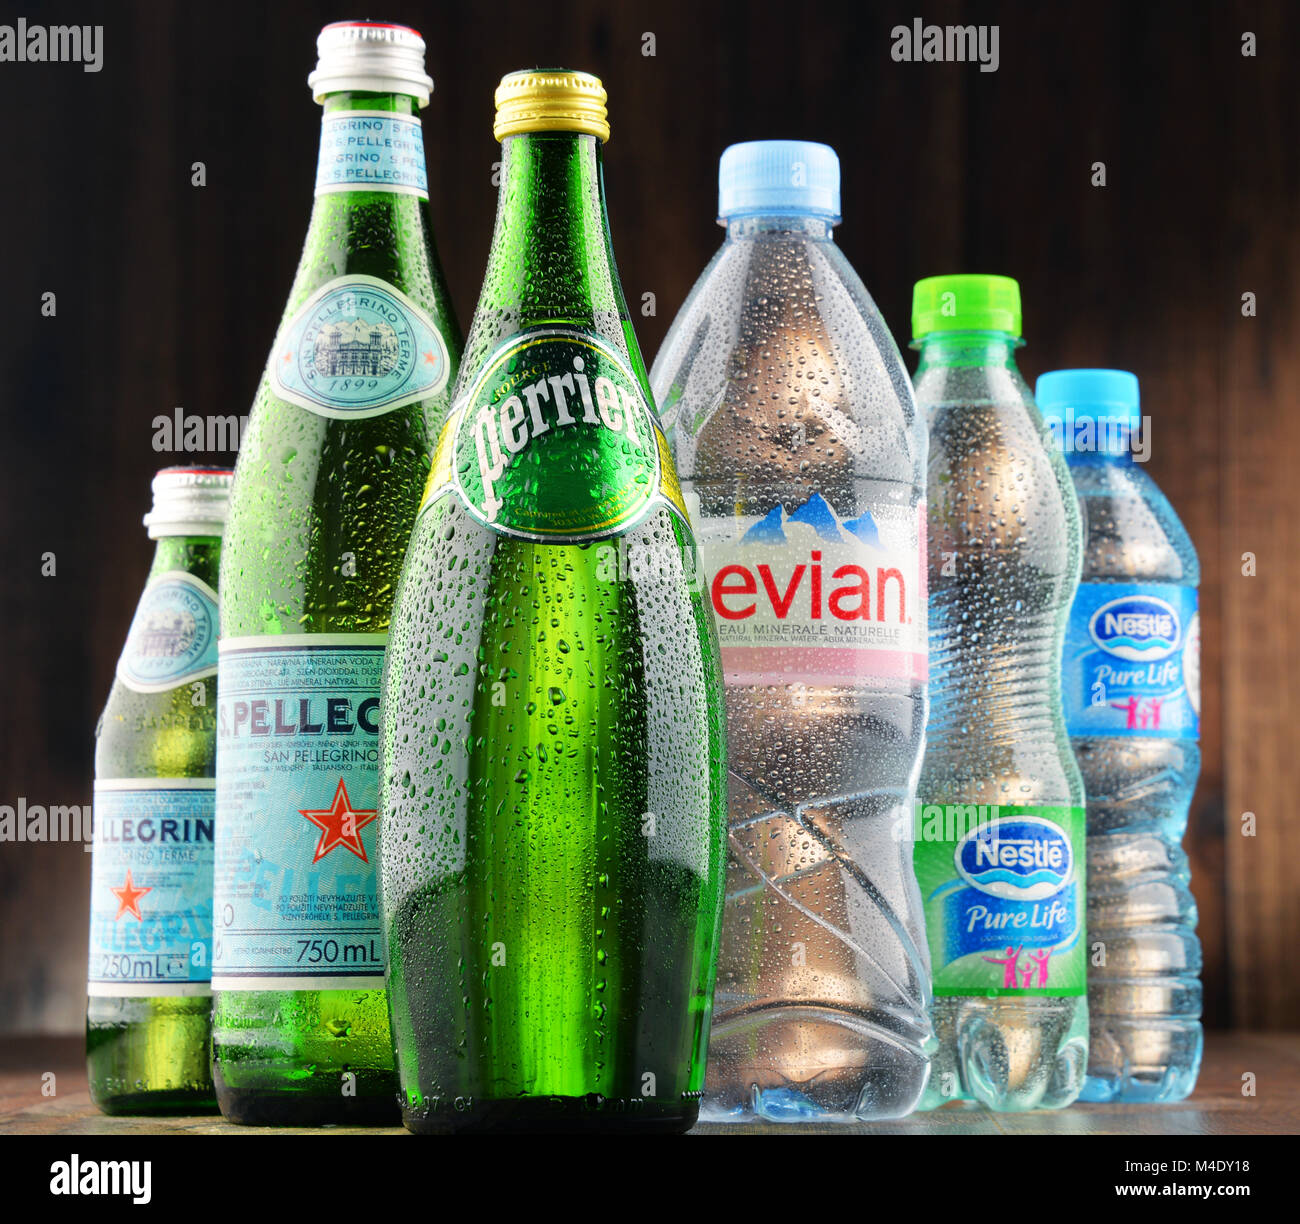 Globale Mineralwasser Marken Stockfotografie - Alamy